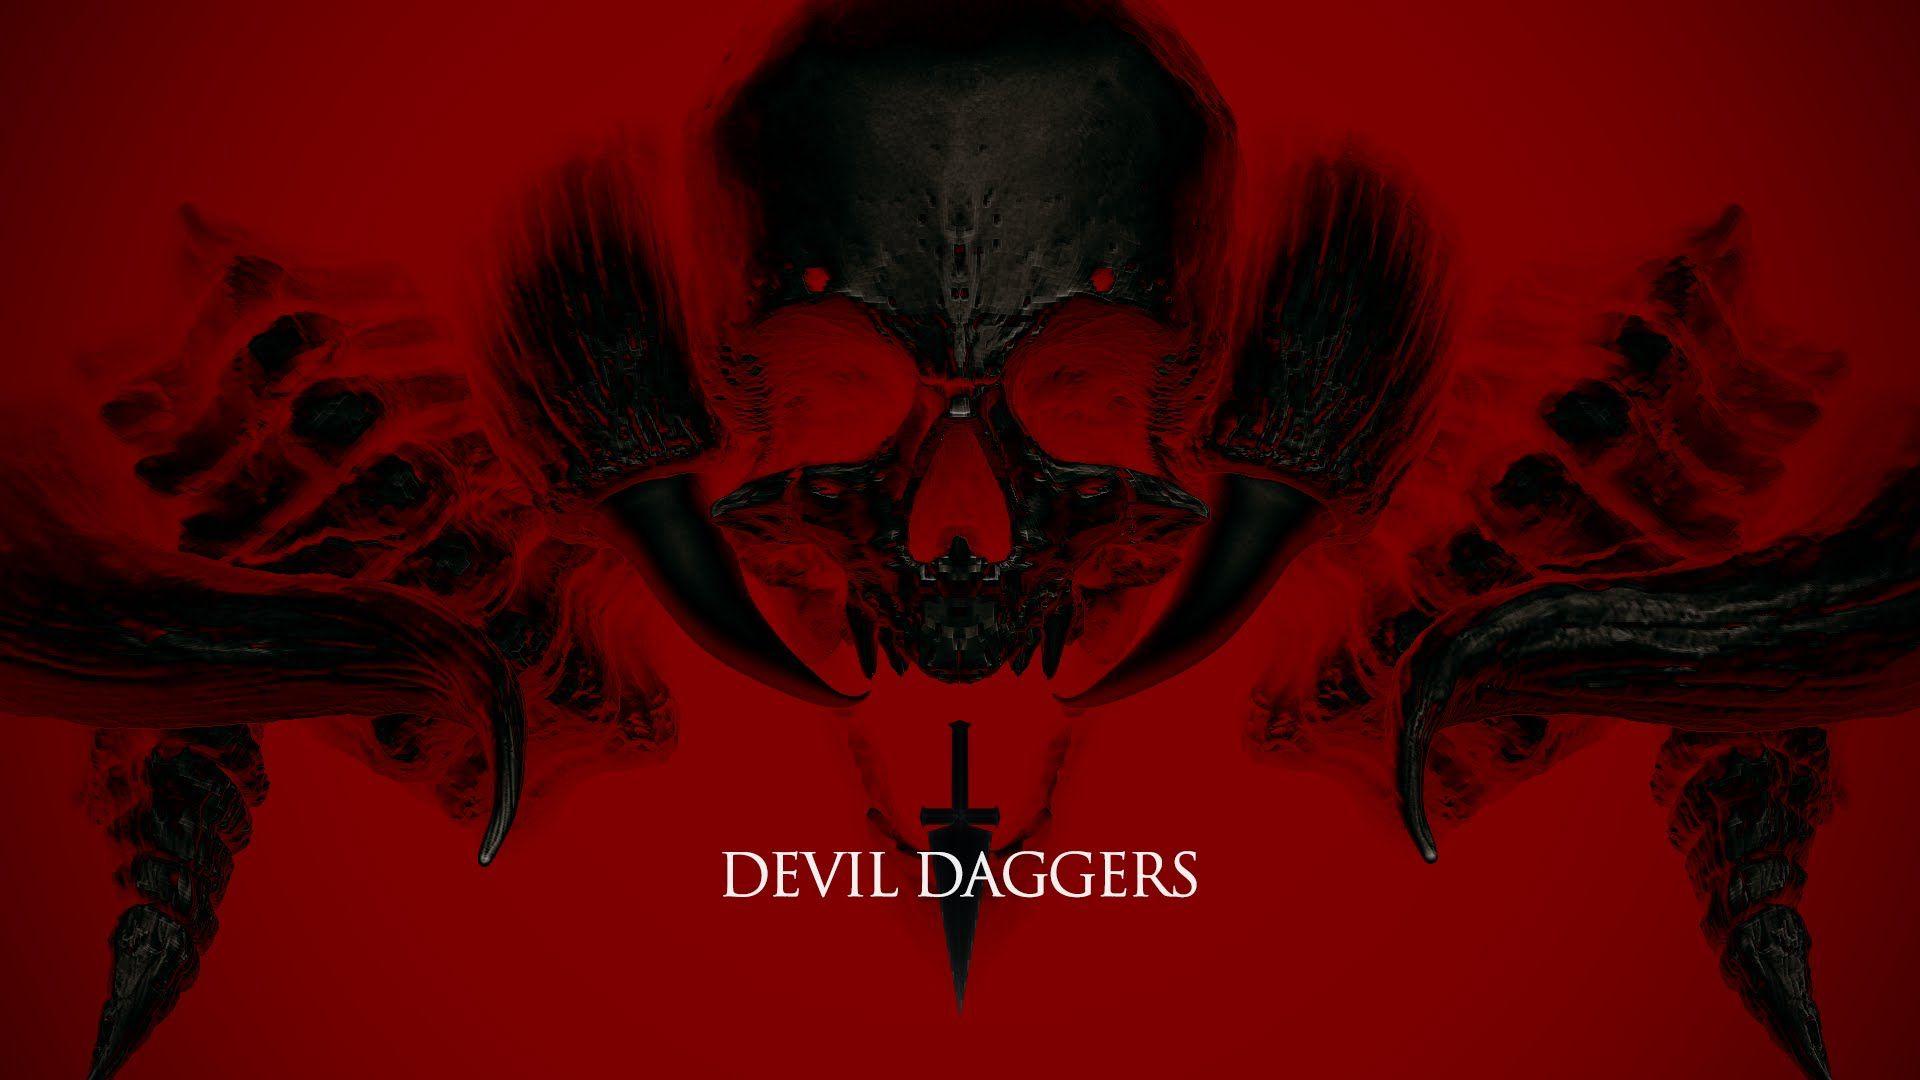 Devil Daggers HD Desktop Wallpaperwallpaper.net